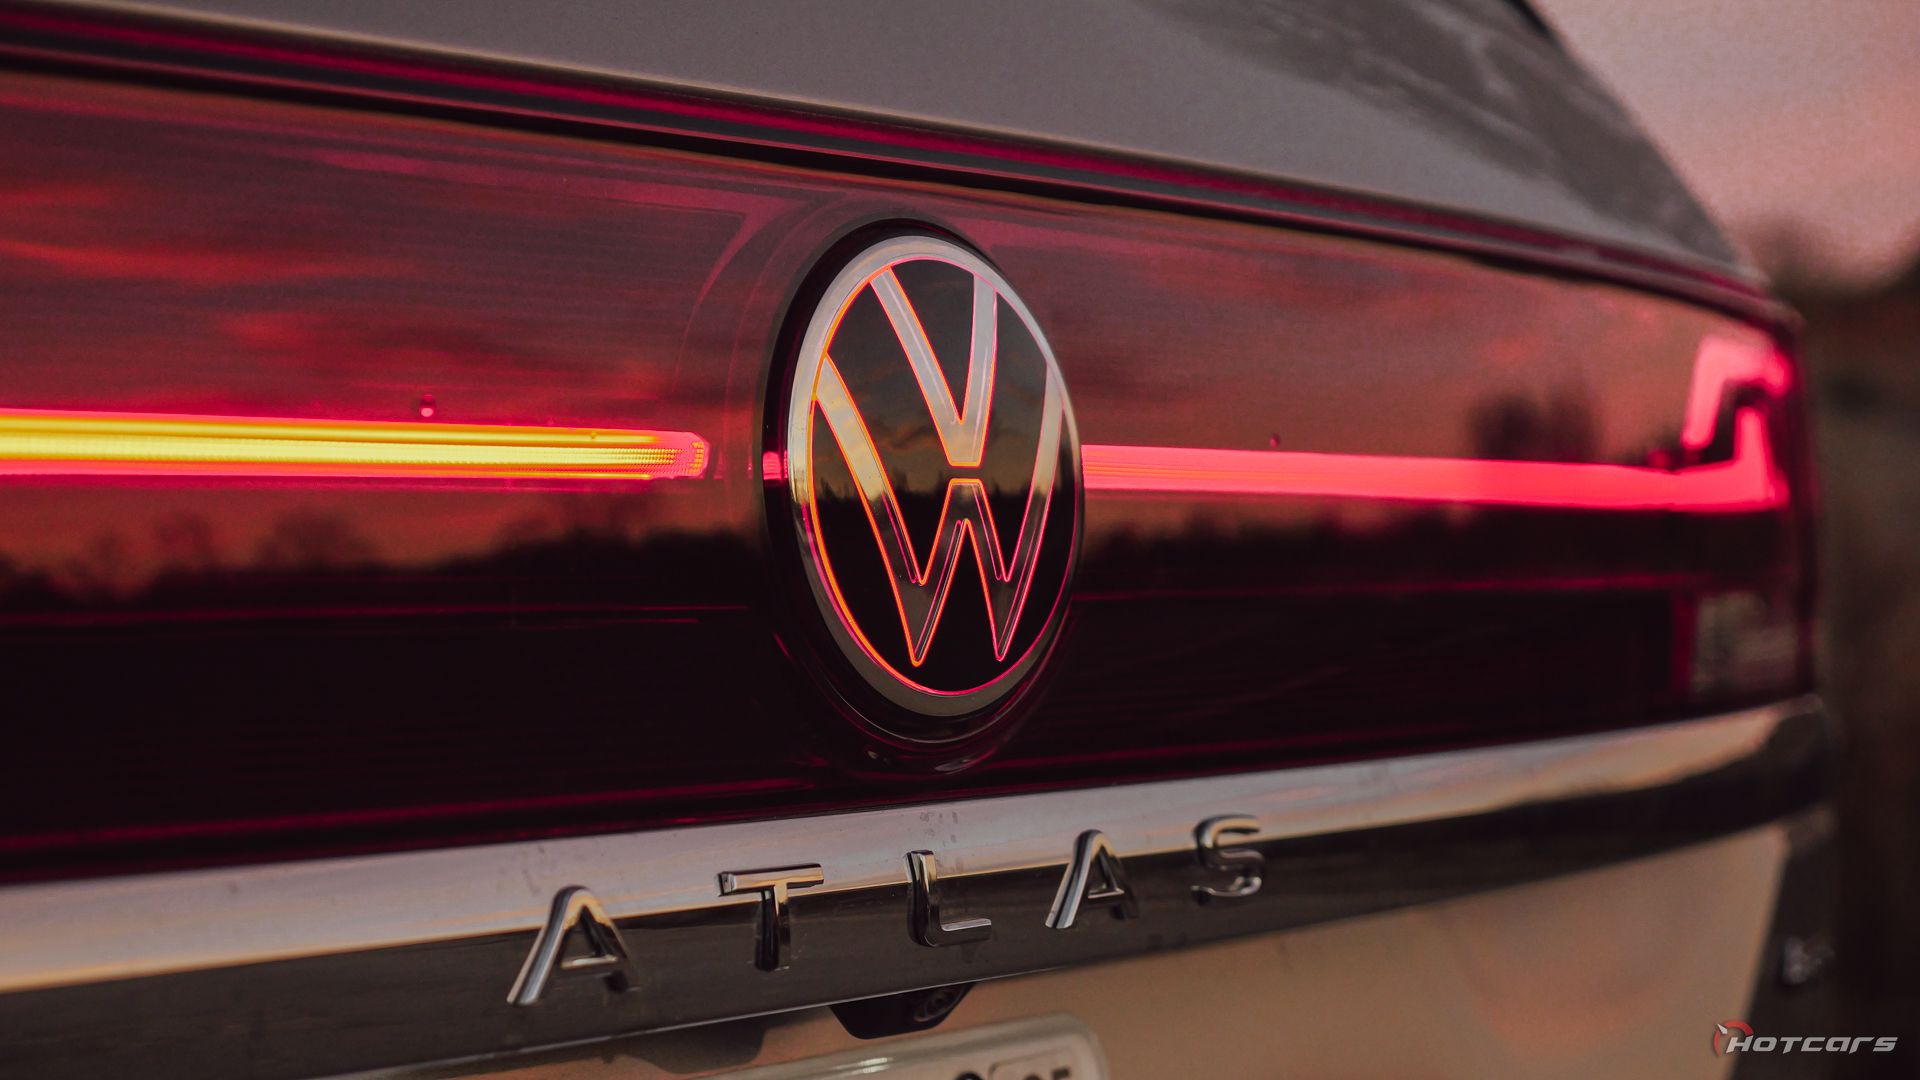 Планка заднего фонаря Volkswagen Atlas R-Line 2024 года выпуска и значок VW